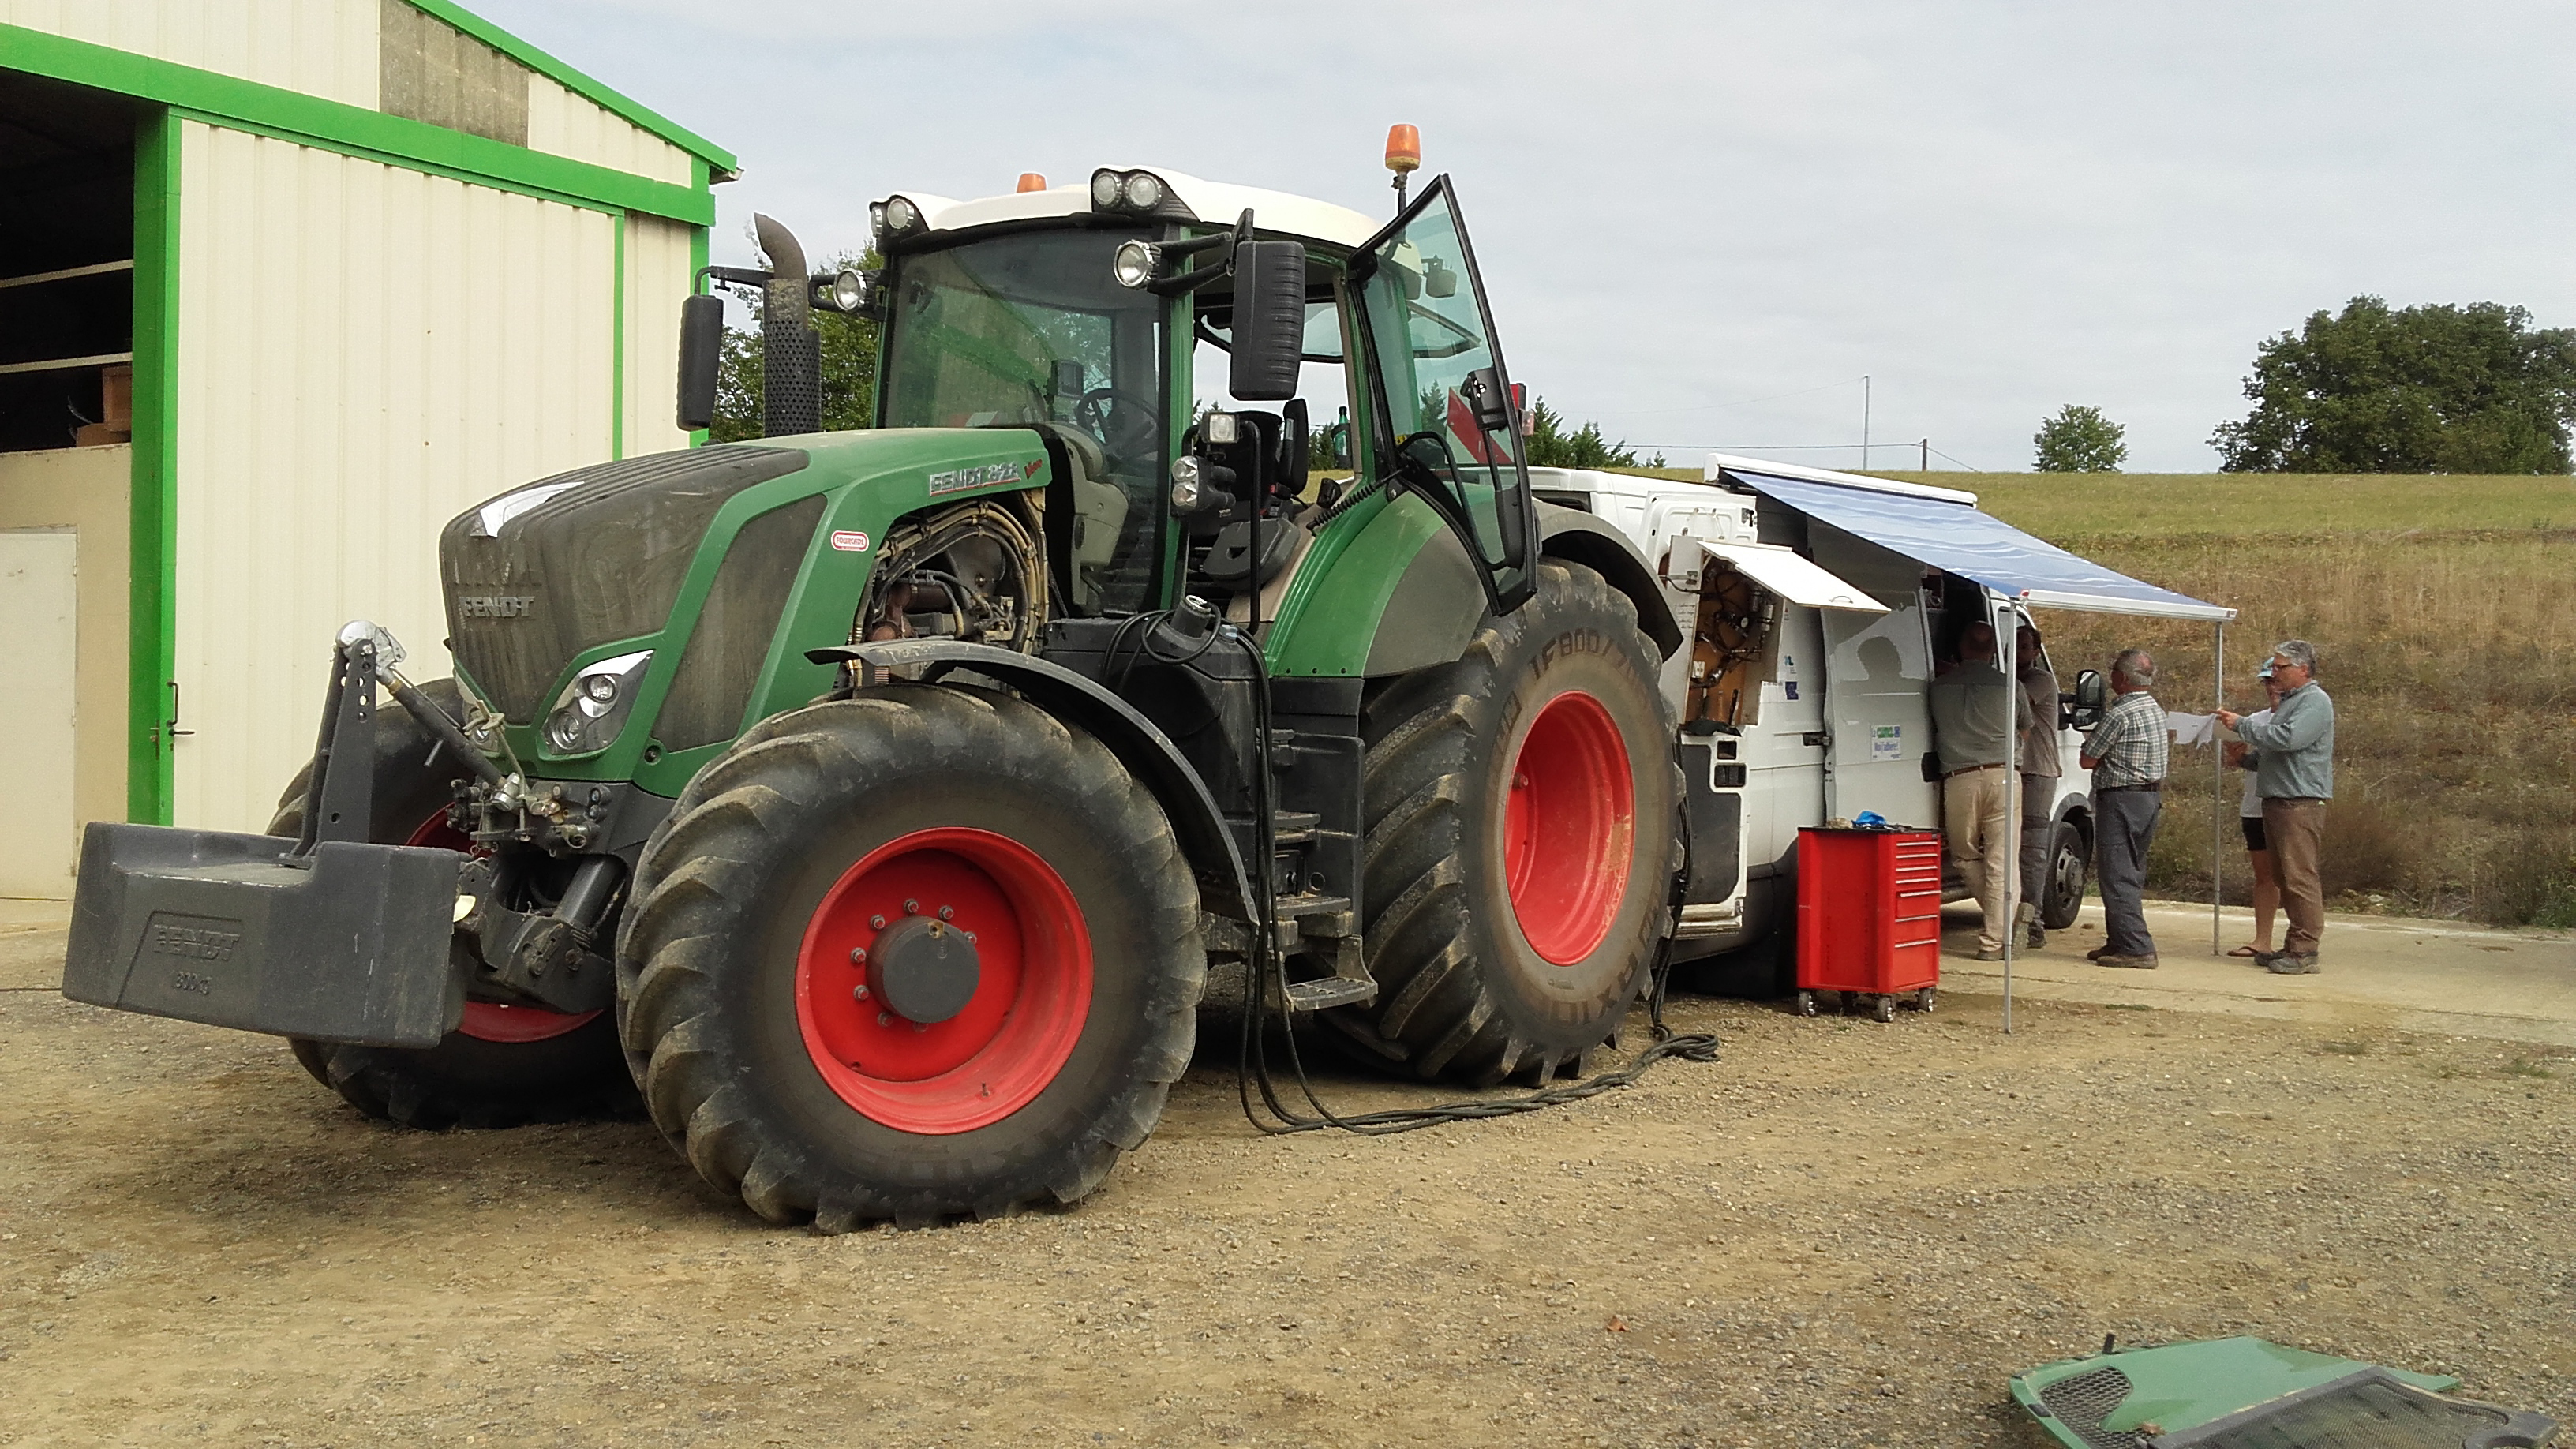 fonctionnement du moteur diesel d'un tracteur agricole - mécanique